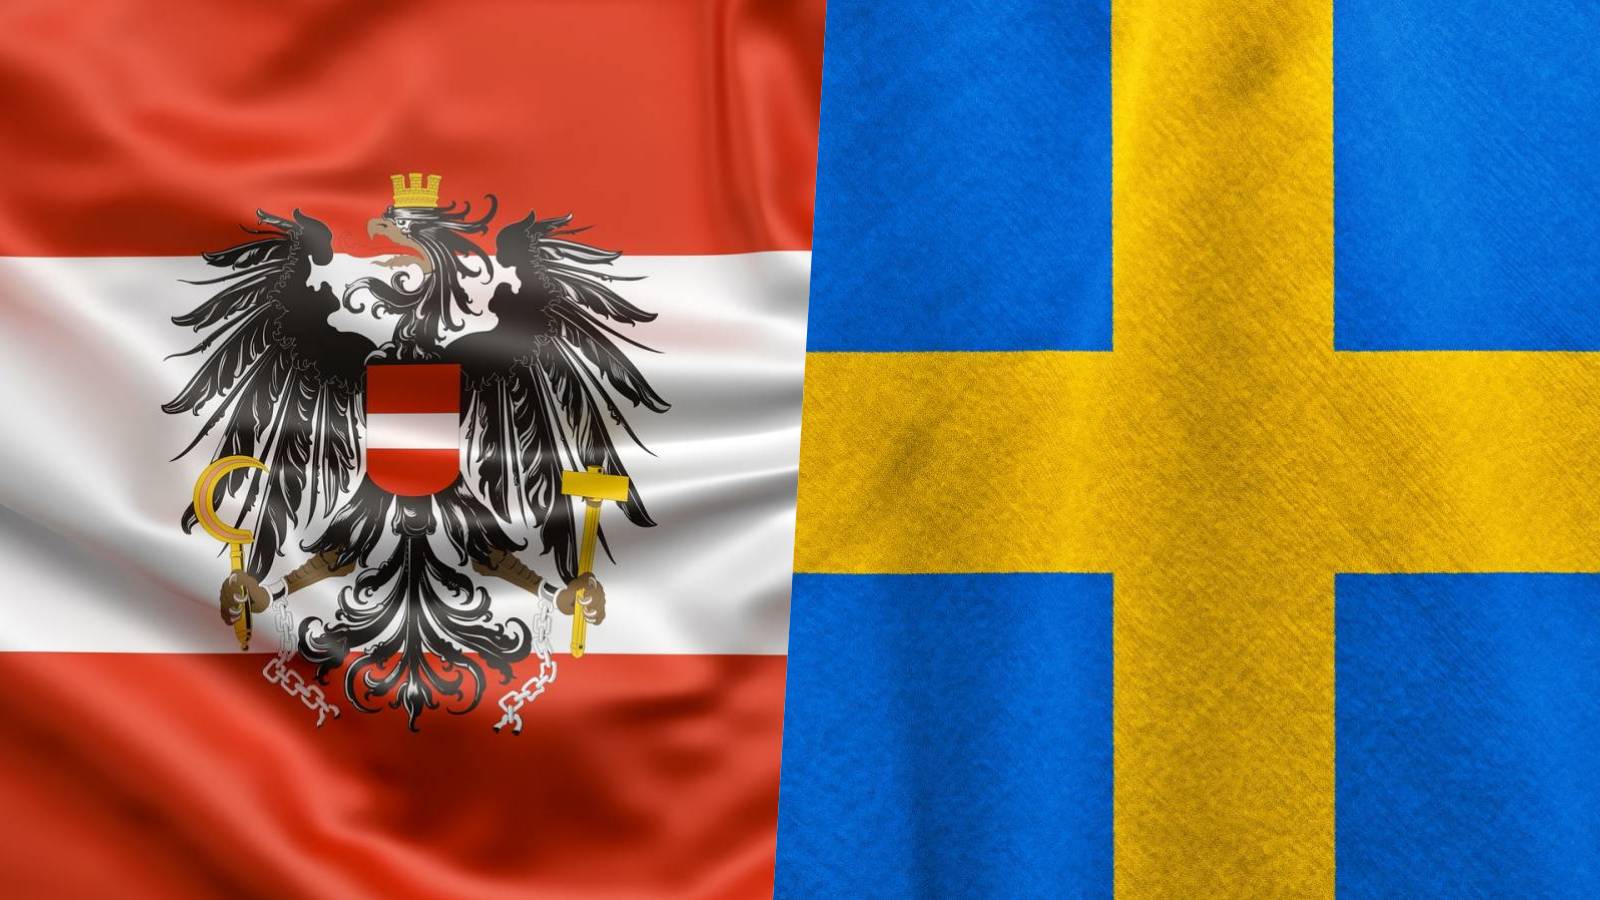 Austria pomogła Szwecji podjąć główne działania sprzyjające przystąpieniu Rumunii do strefy Schengen